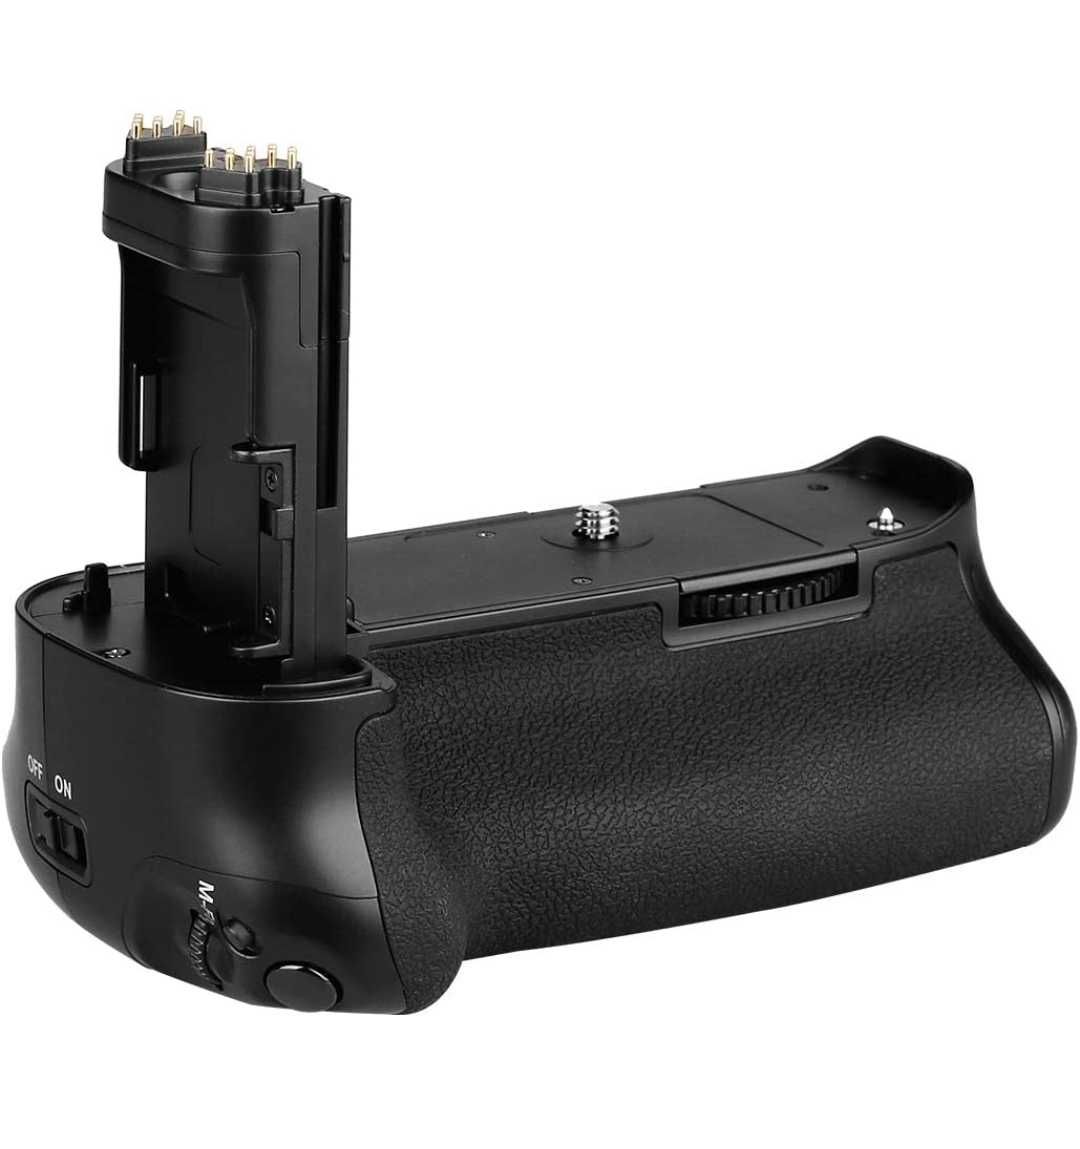 Punho / Grip para Canon 7D Mk II com comando - Novo